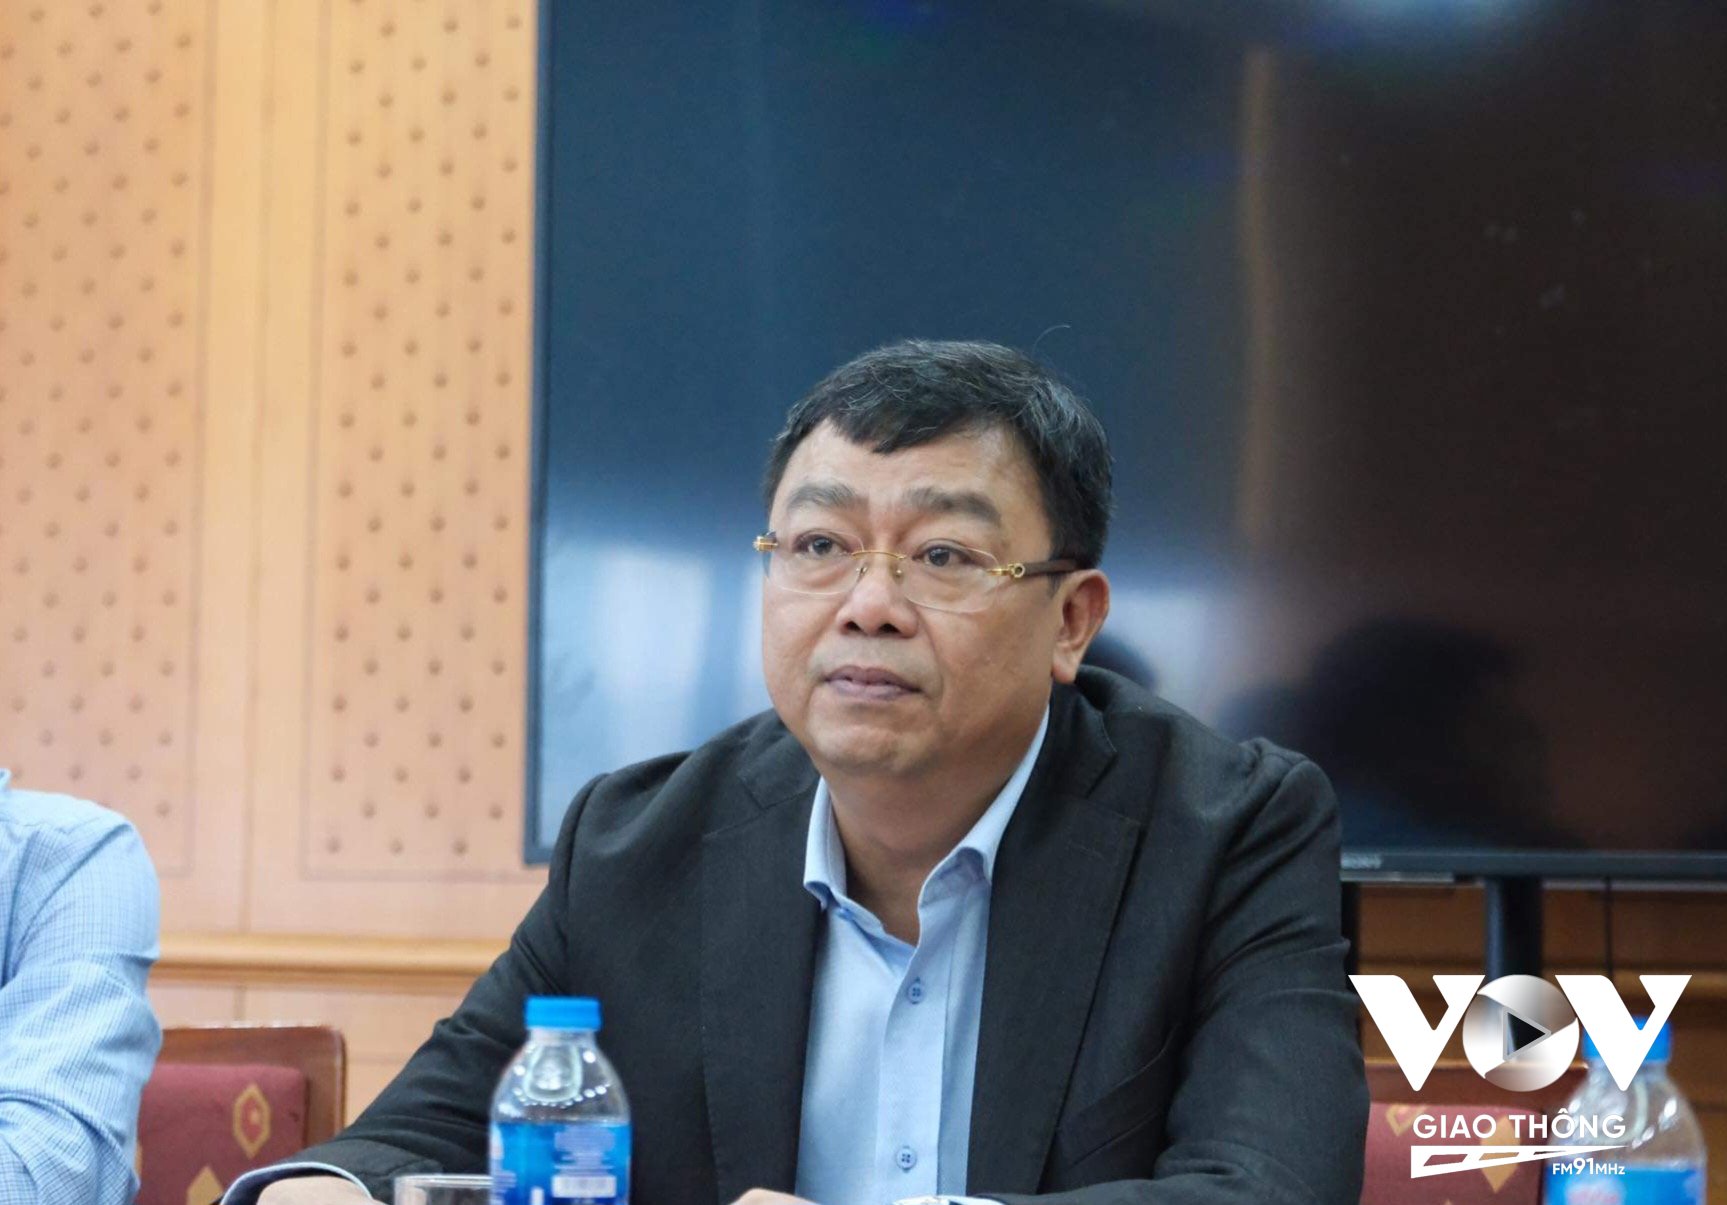 Ông Nguyễn Tô An, Phó cục trưởng Cục Đăng kiểm VN (ngồi giữa) cho biết, việc giải quyết nhu cầu đăng kiểm cho phương tiện trong thời điểm trước mắt là rất cấp thiết